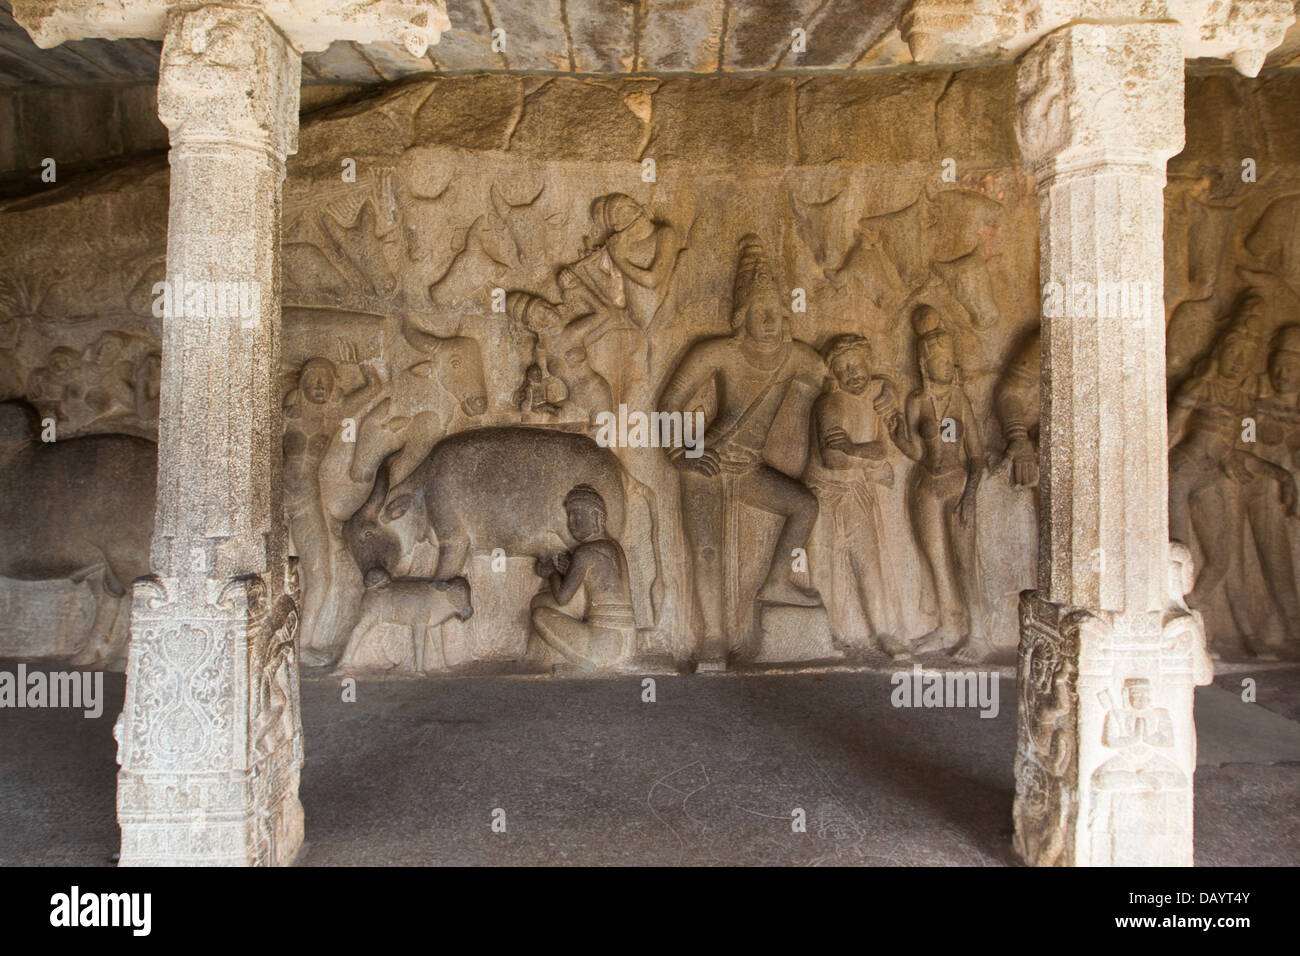 Mandapam Stone Temple Cave, Mahabalipuram or Mamallapuram, Tamil Nadu, India Stock Photo